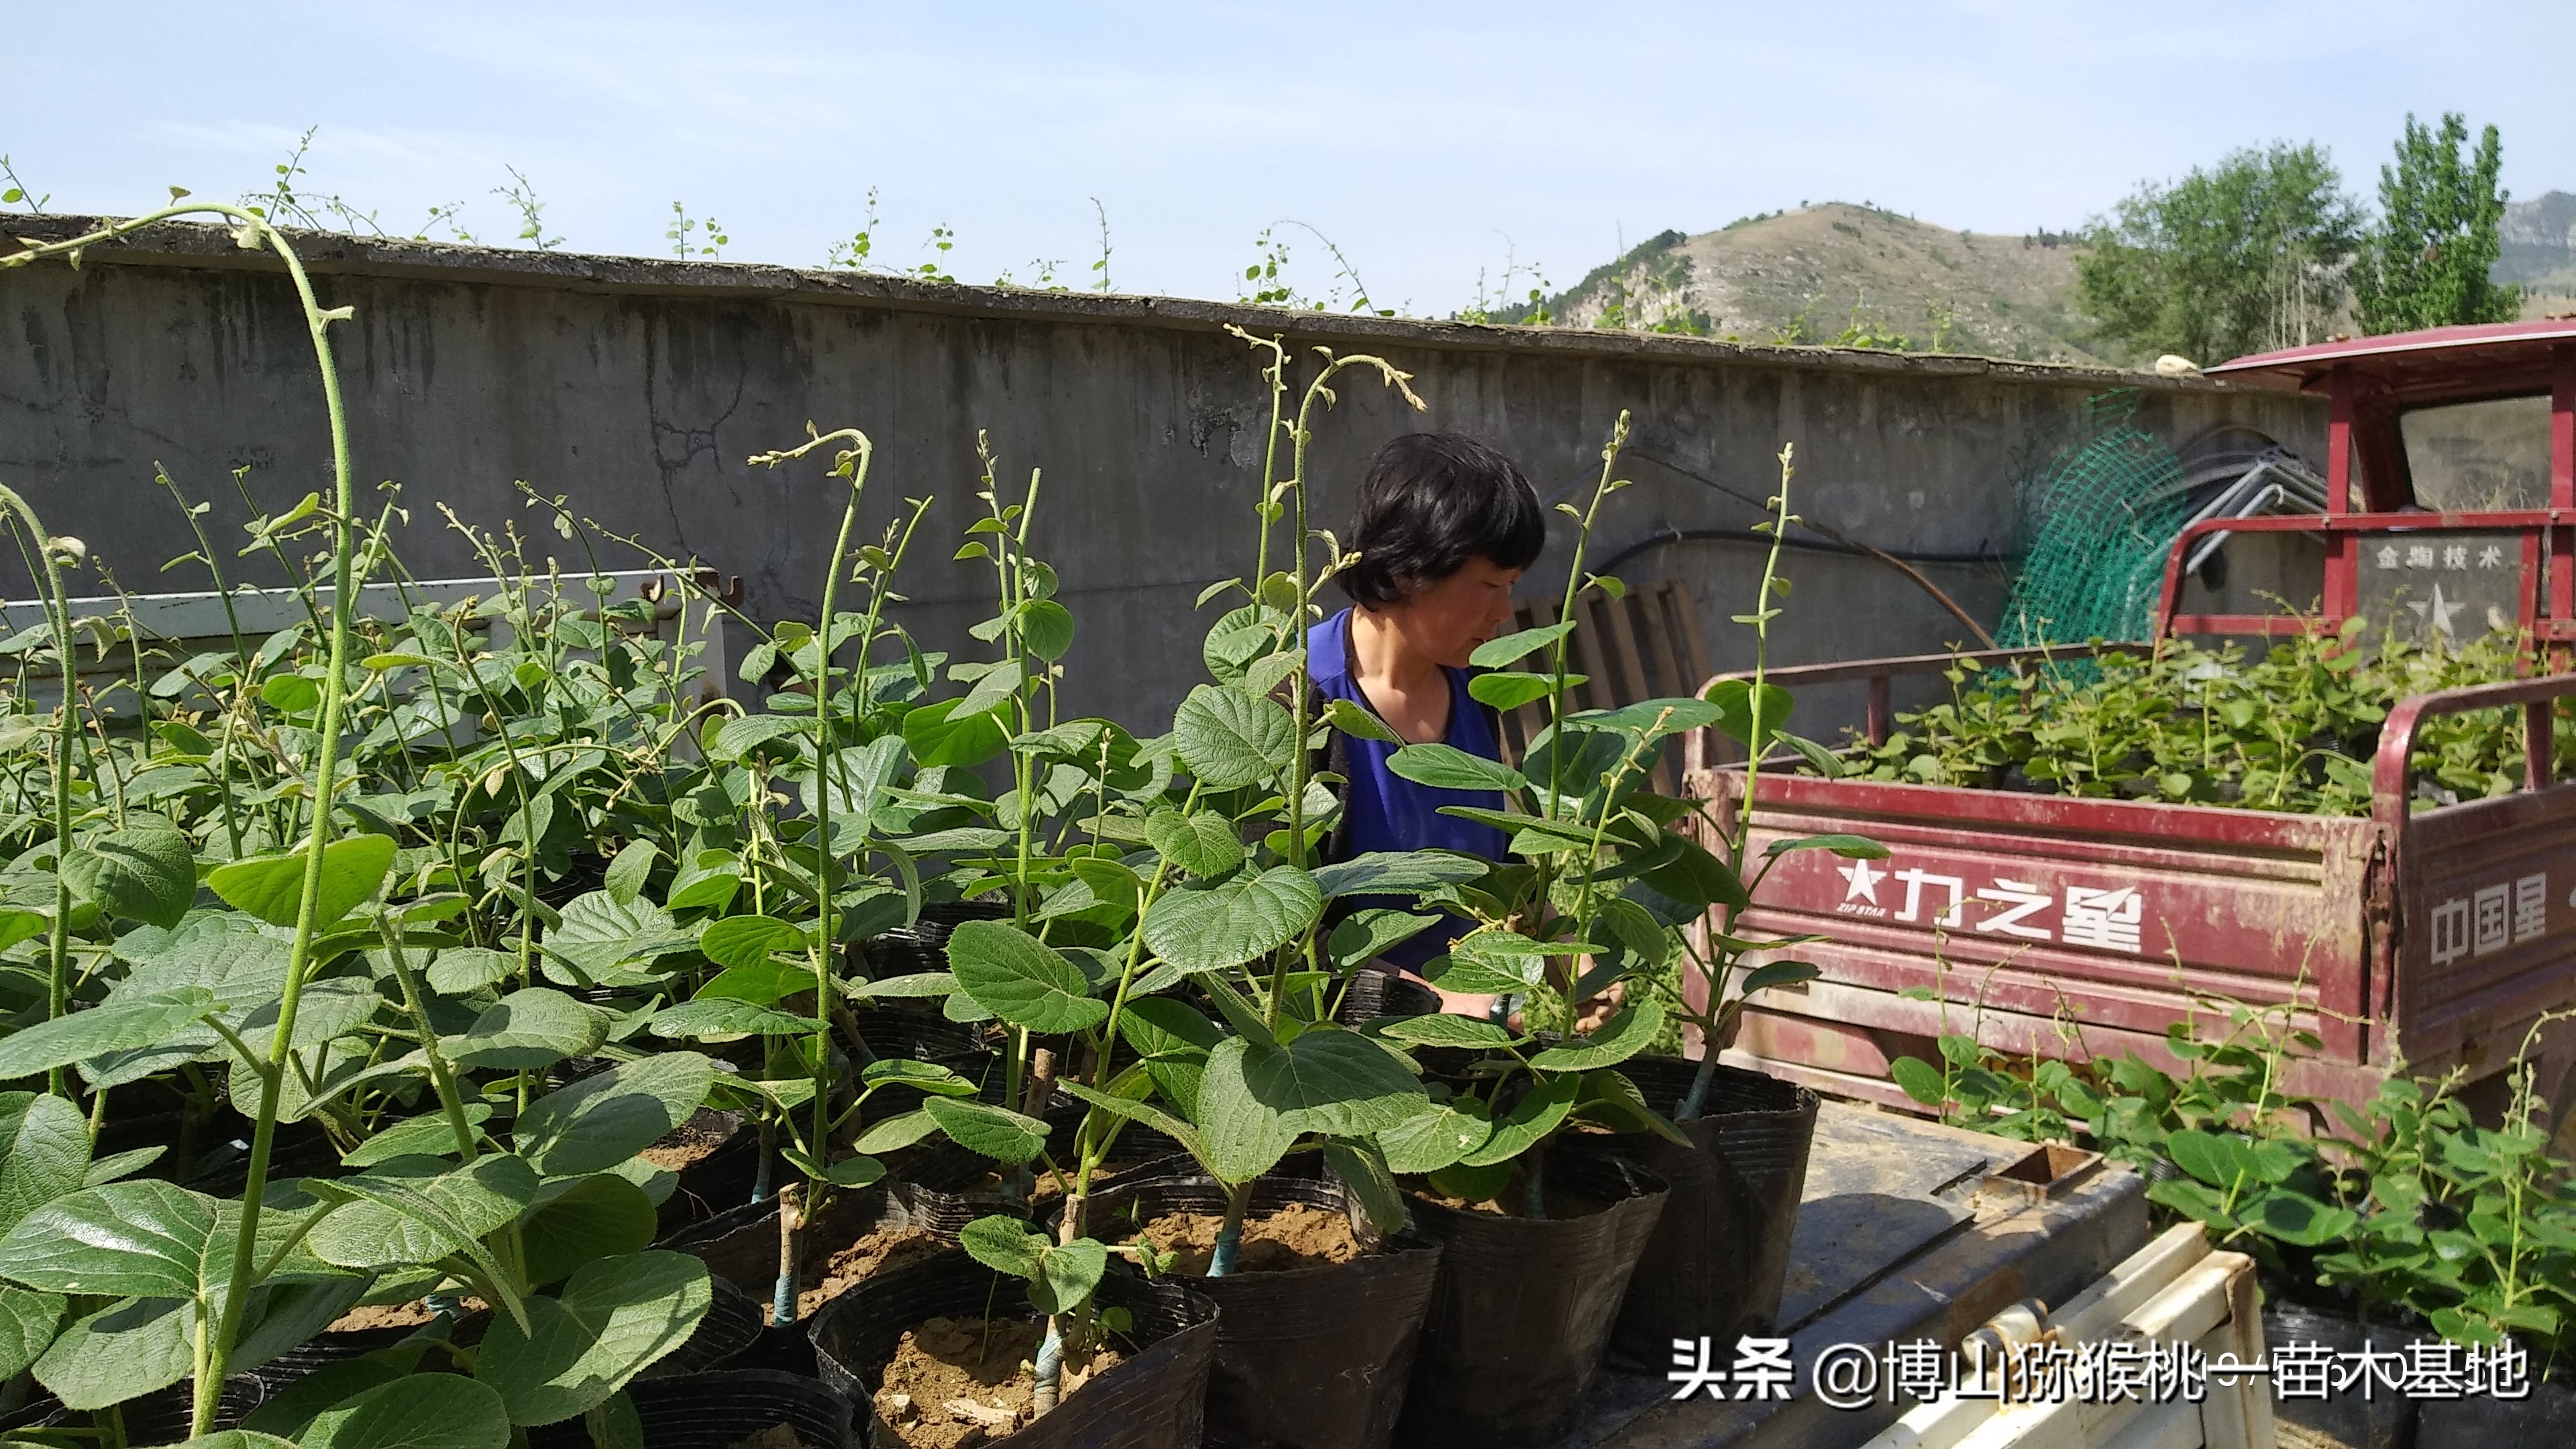 个人对山东淄博博山碧玉品种猕猴桃种植前景与价格走势的个人看法